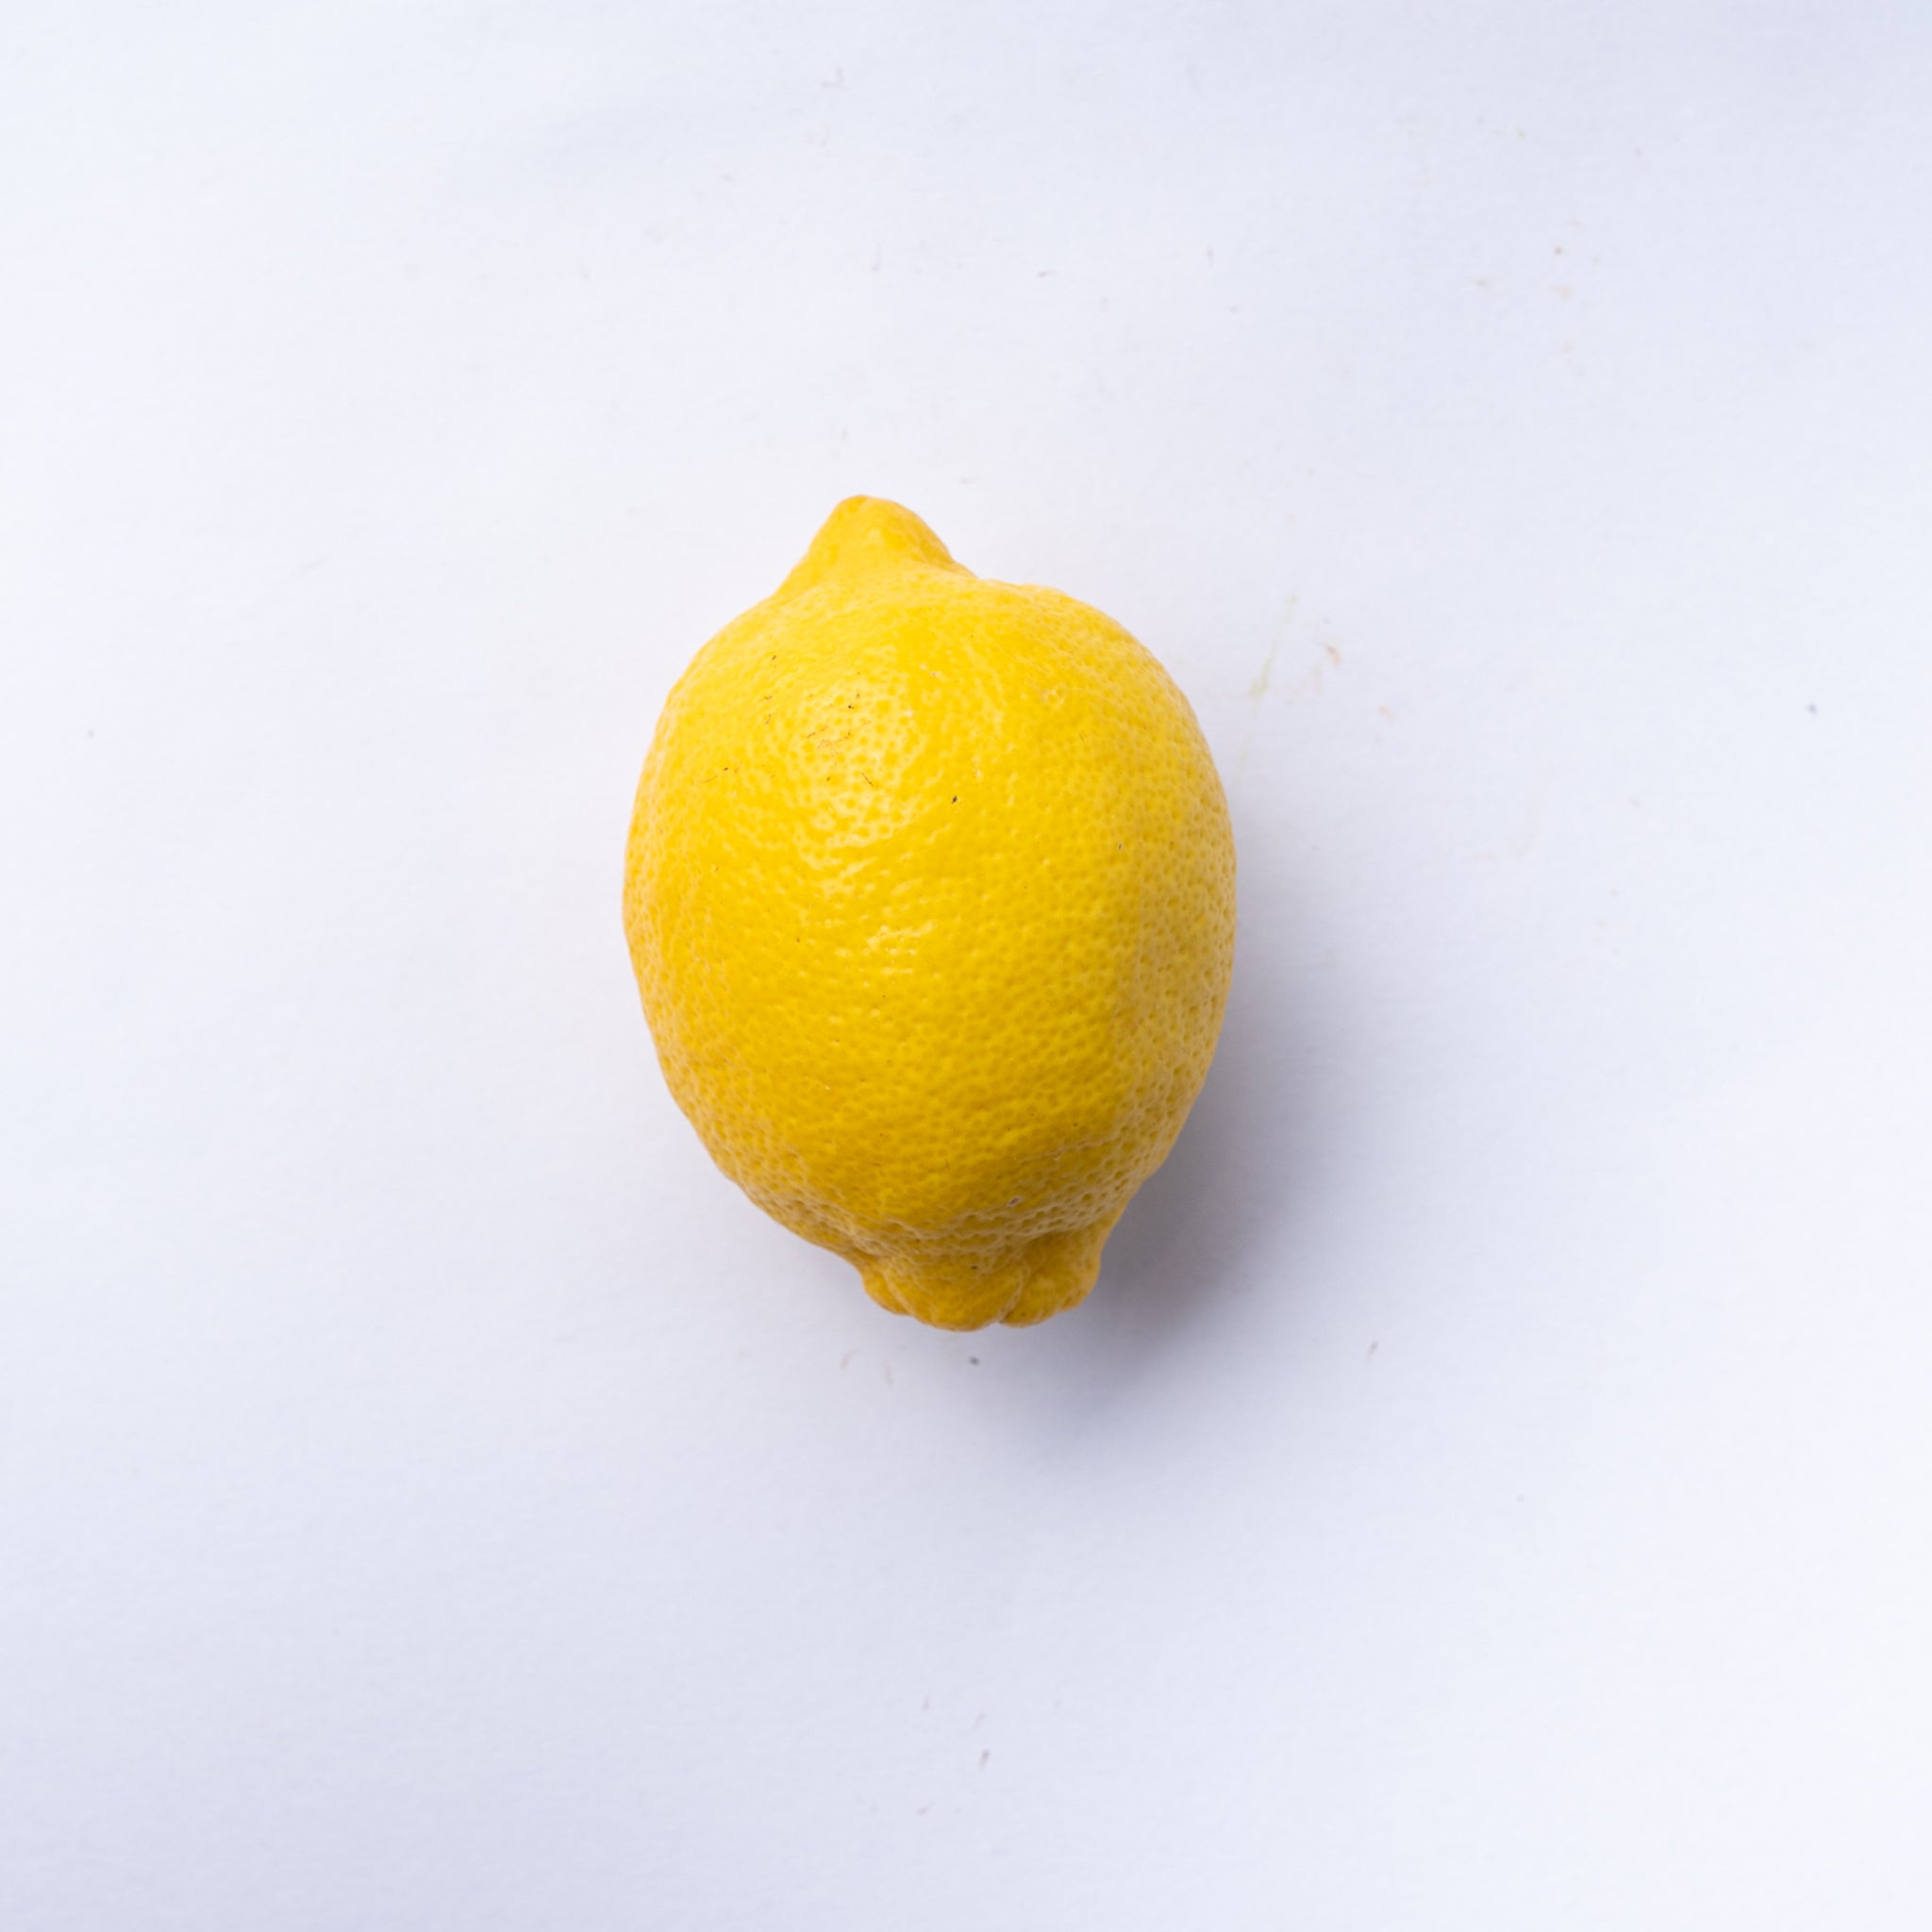 A lemon.